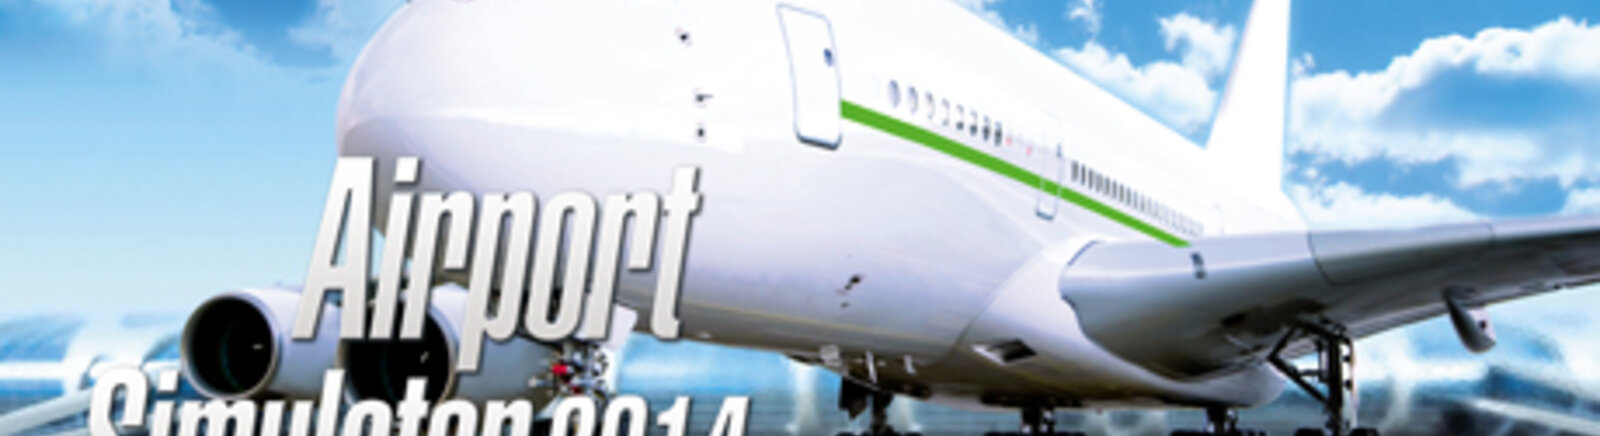 Дата выхода Airport Simulator 2014  на PC и Mac в России и во всем мире